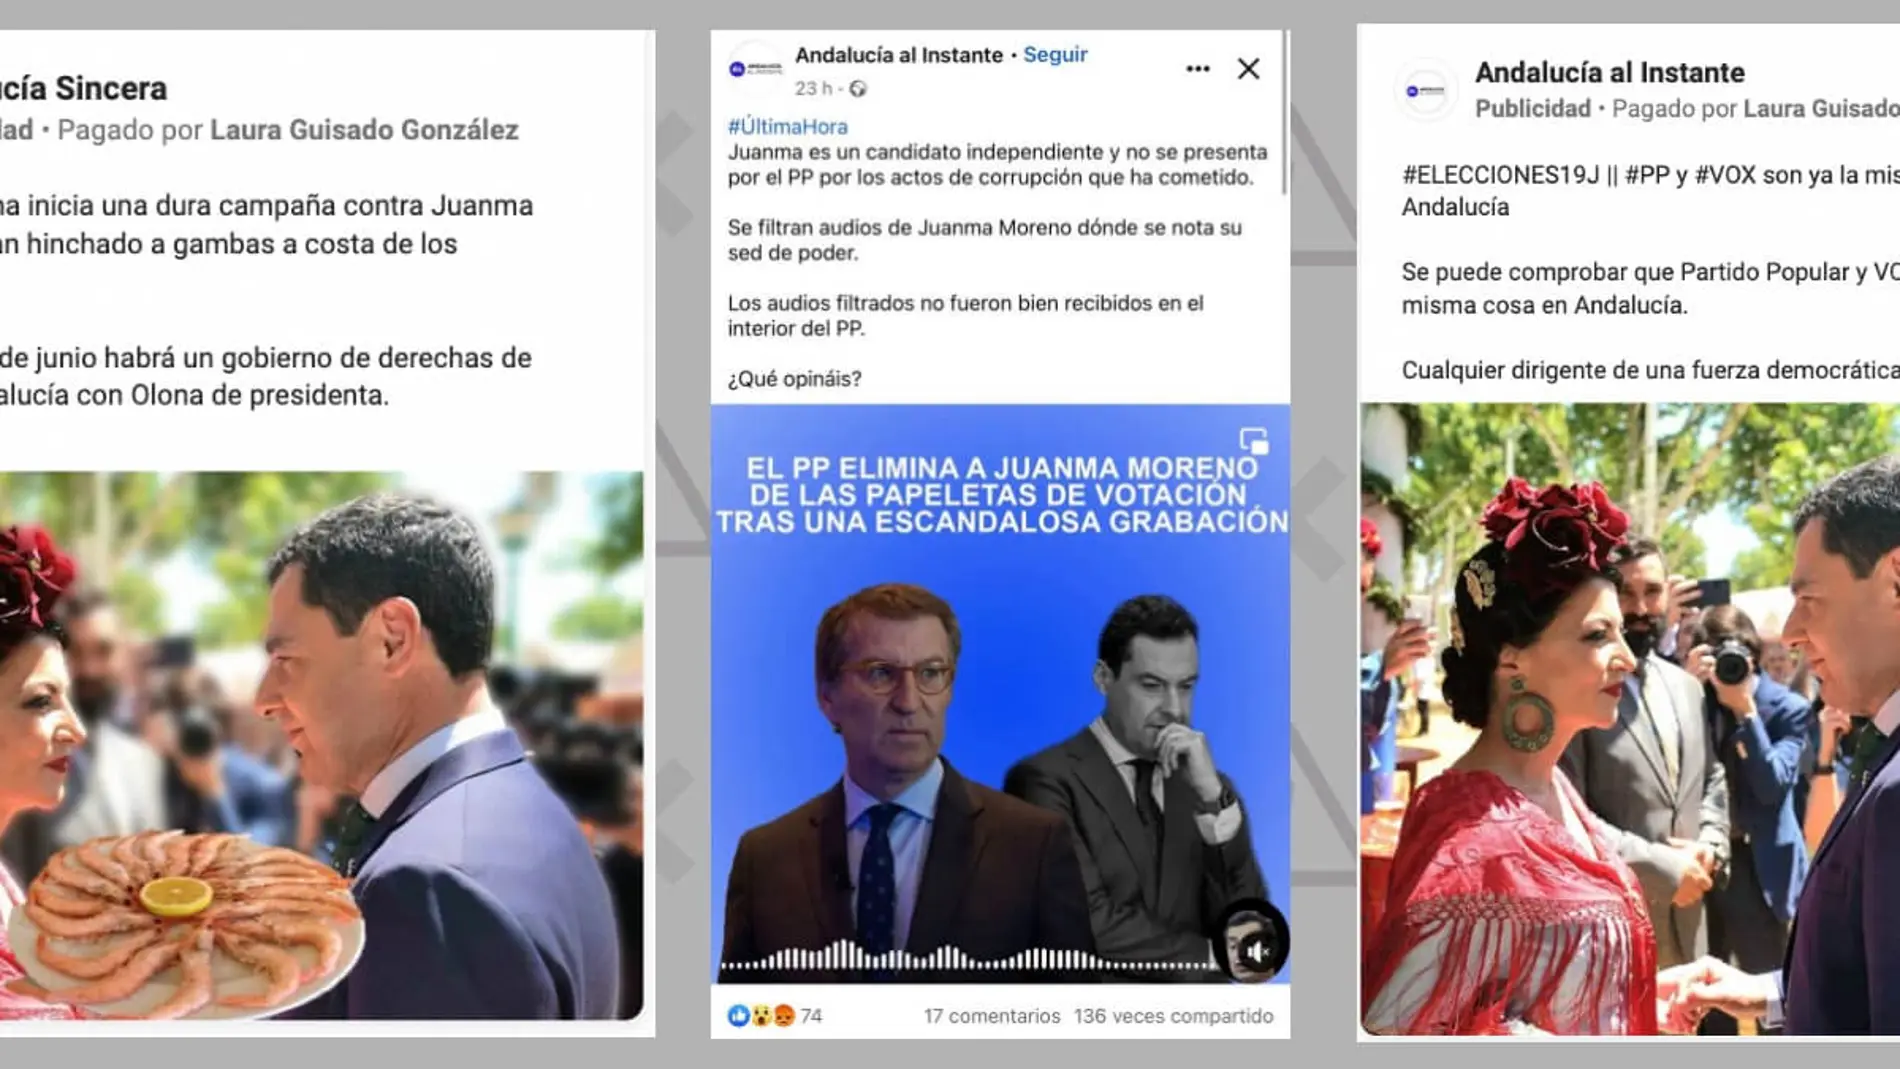 Andalucía al Instante y Andalucía Sincera son dos páginas administradas desde España, México y Colombia con publicidad pagada por la misma persona